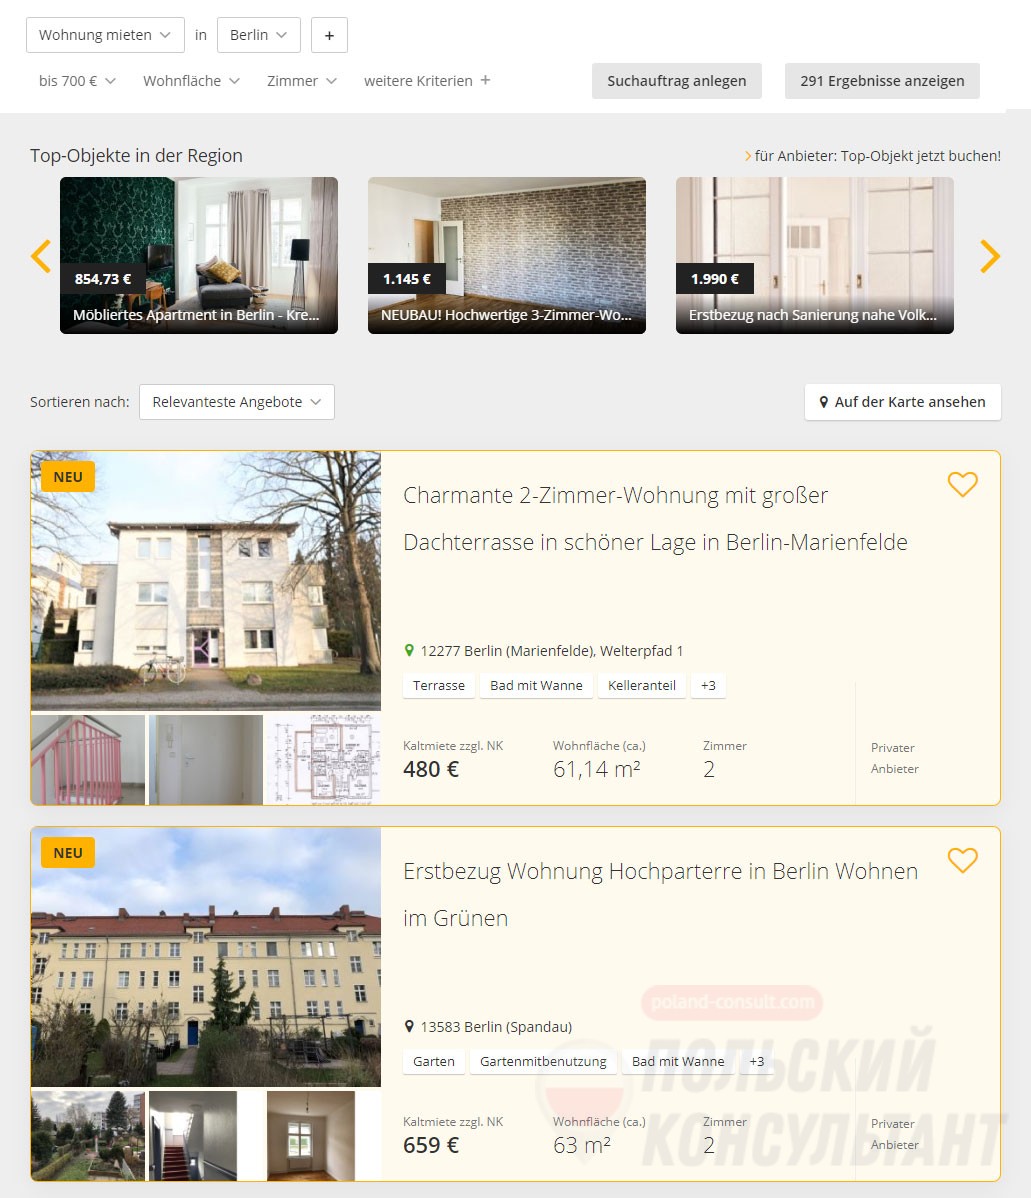 Немецкие сайты недвижимости район бешикташ в стамбуле отзывы